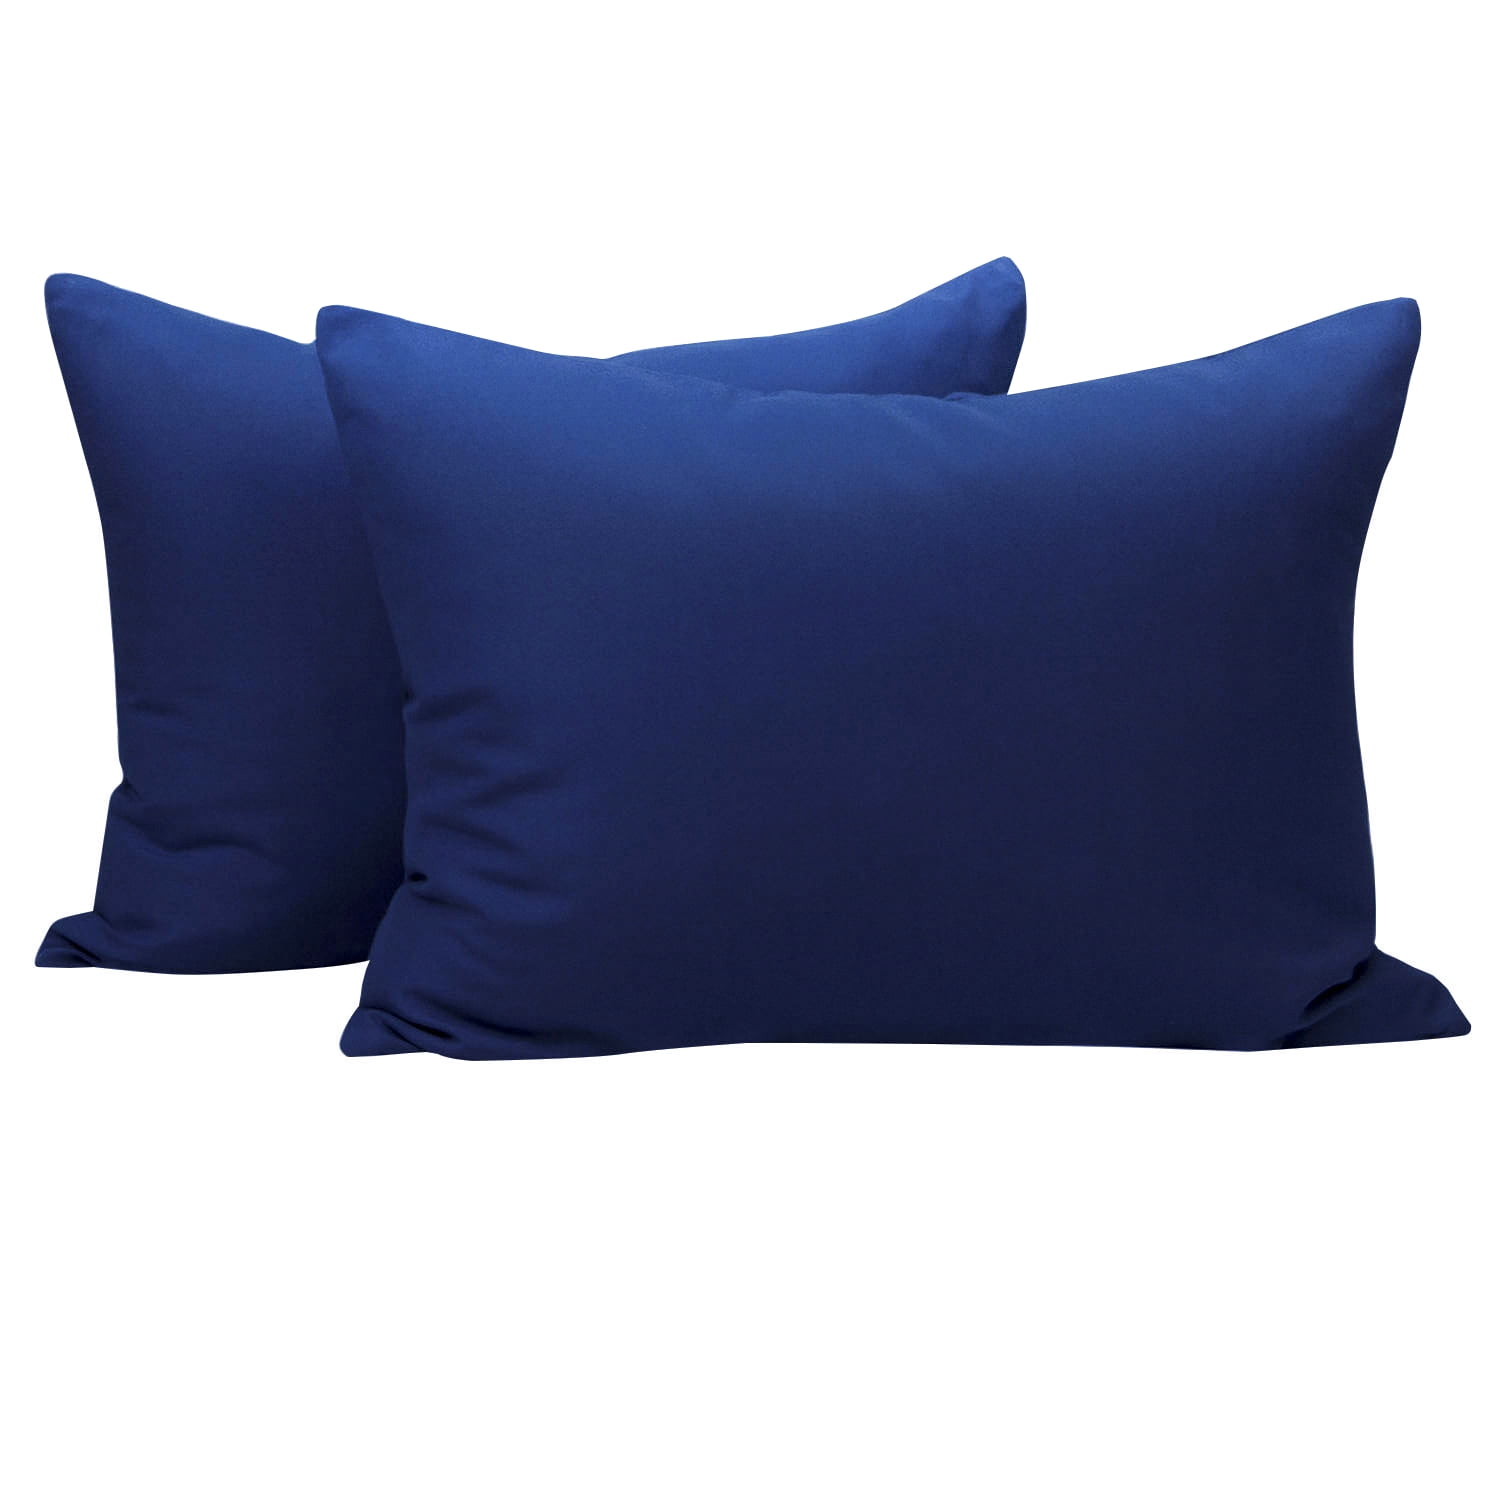 2 Pcs Travel Size Pillowcases Soft 1800 Microfiber Pillow Case Covers 17 Colors 